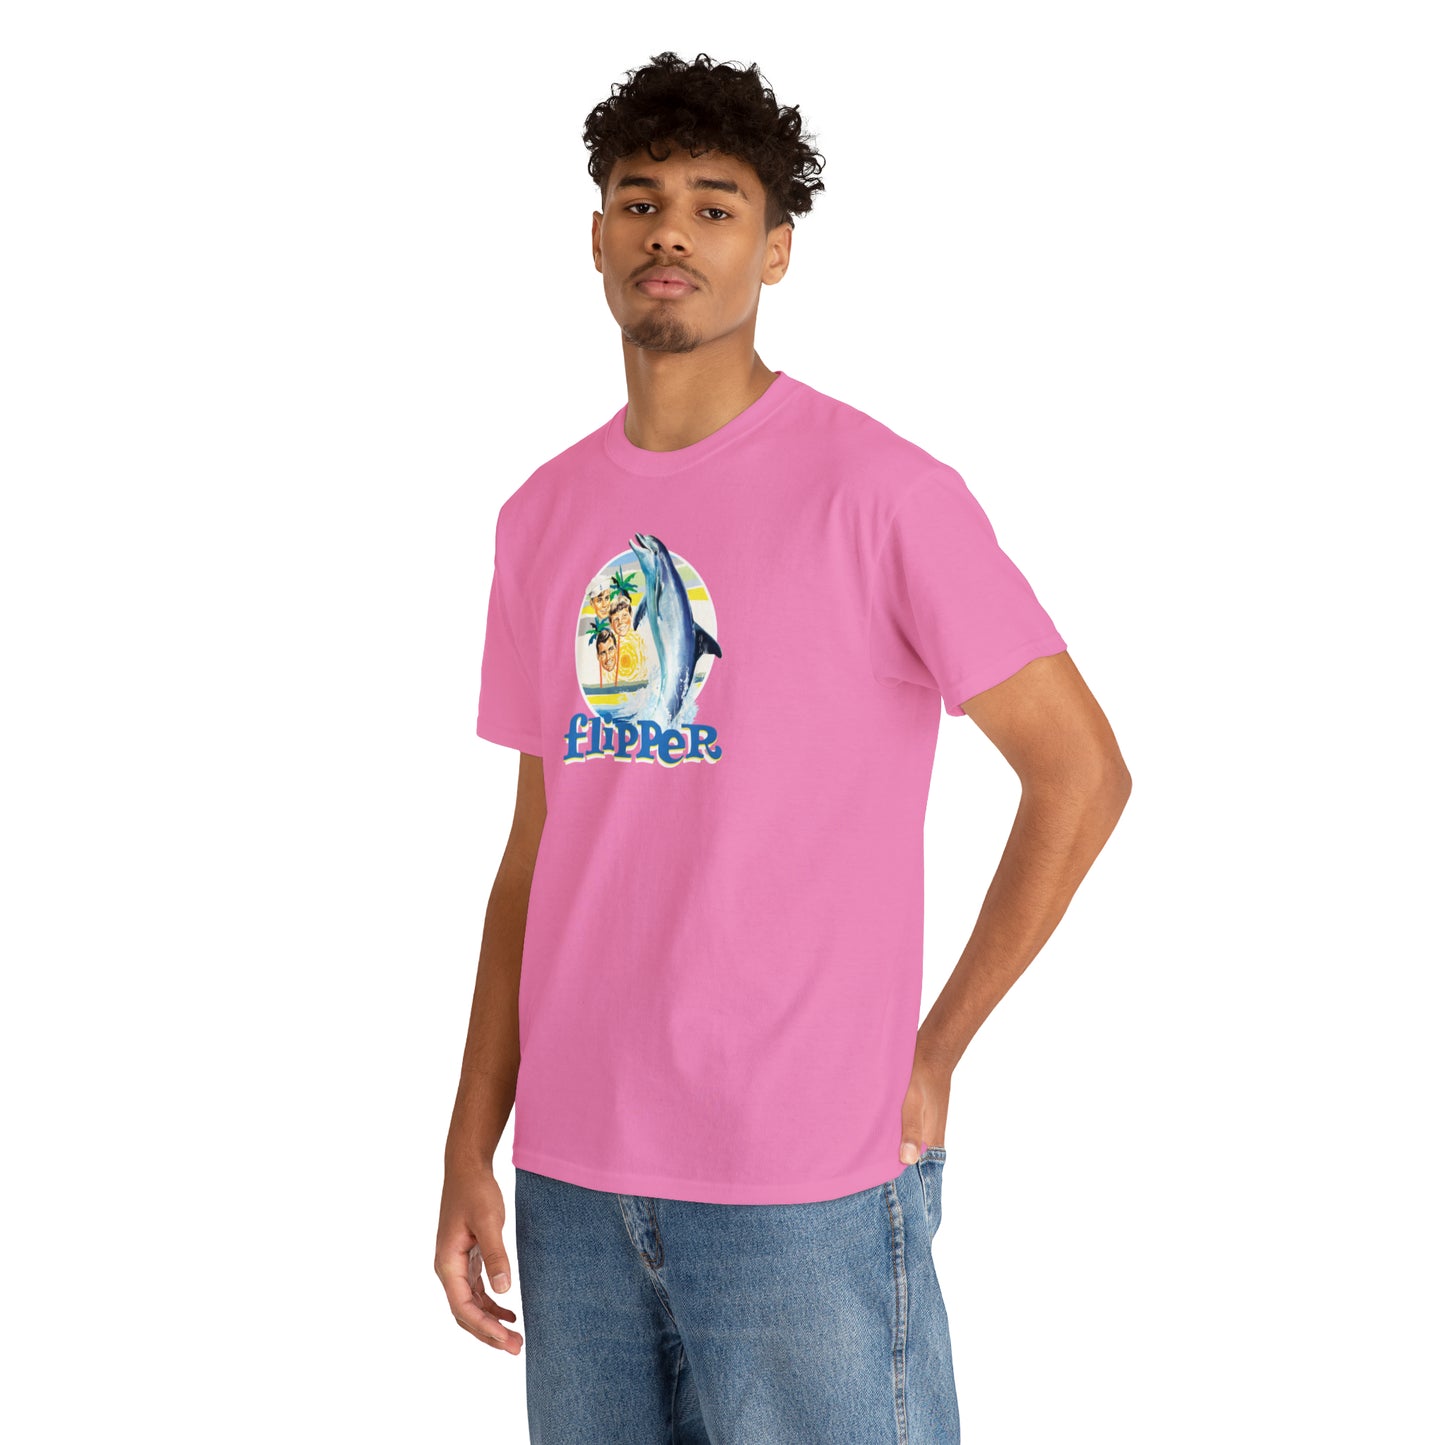 Flipper T-Shirt